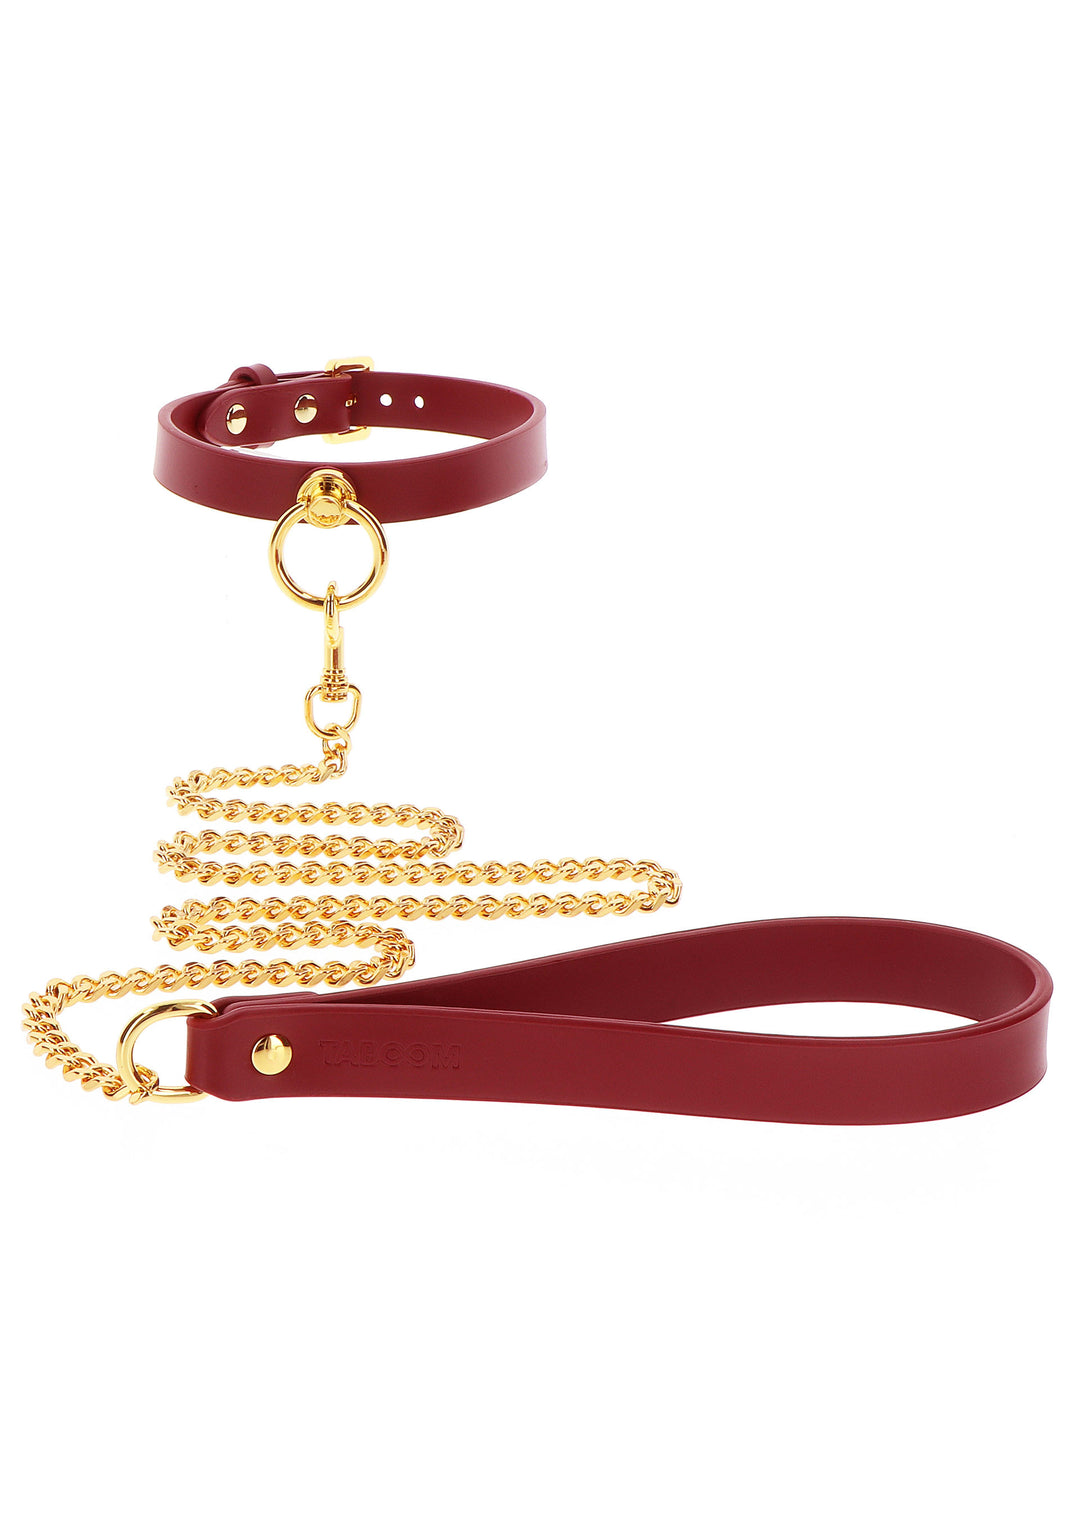 Collare con guinzaglio O-Ring Collar and Chain Leash